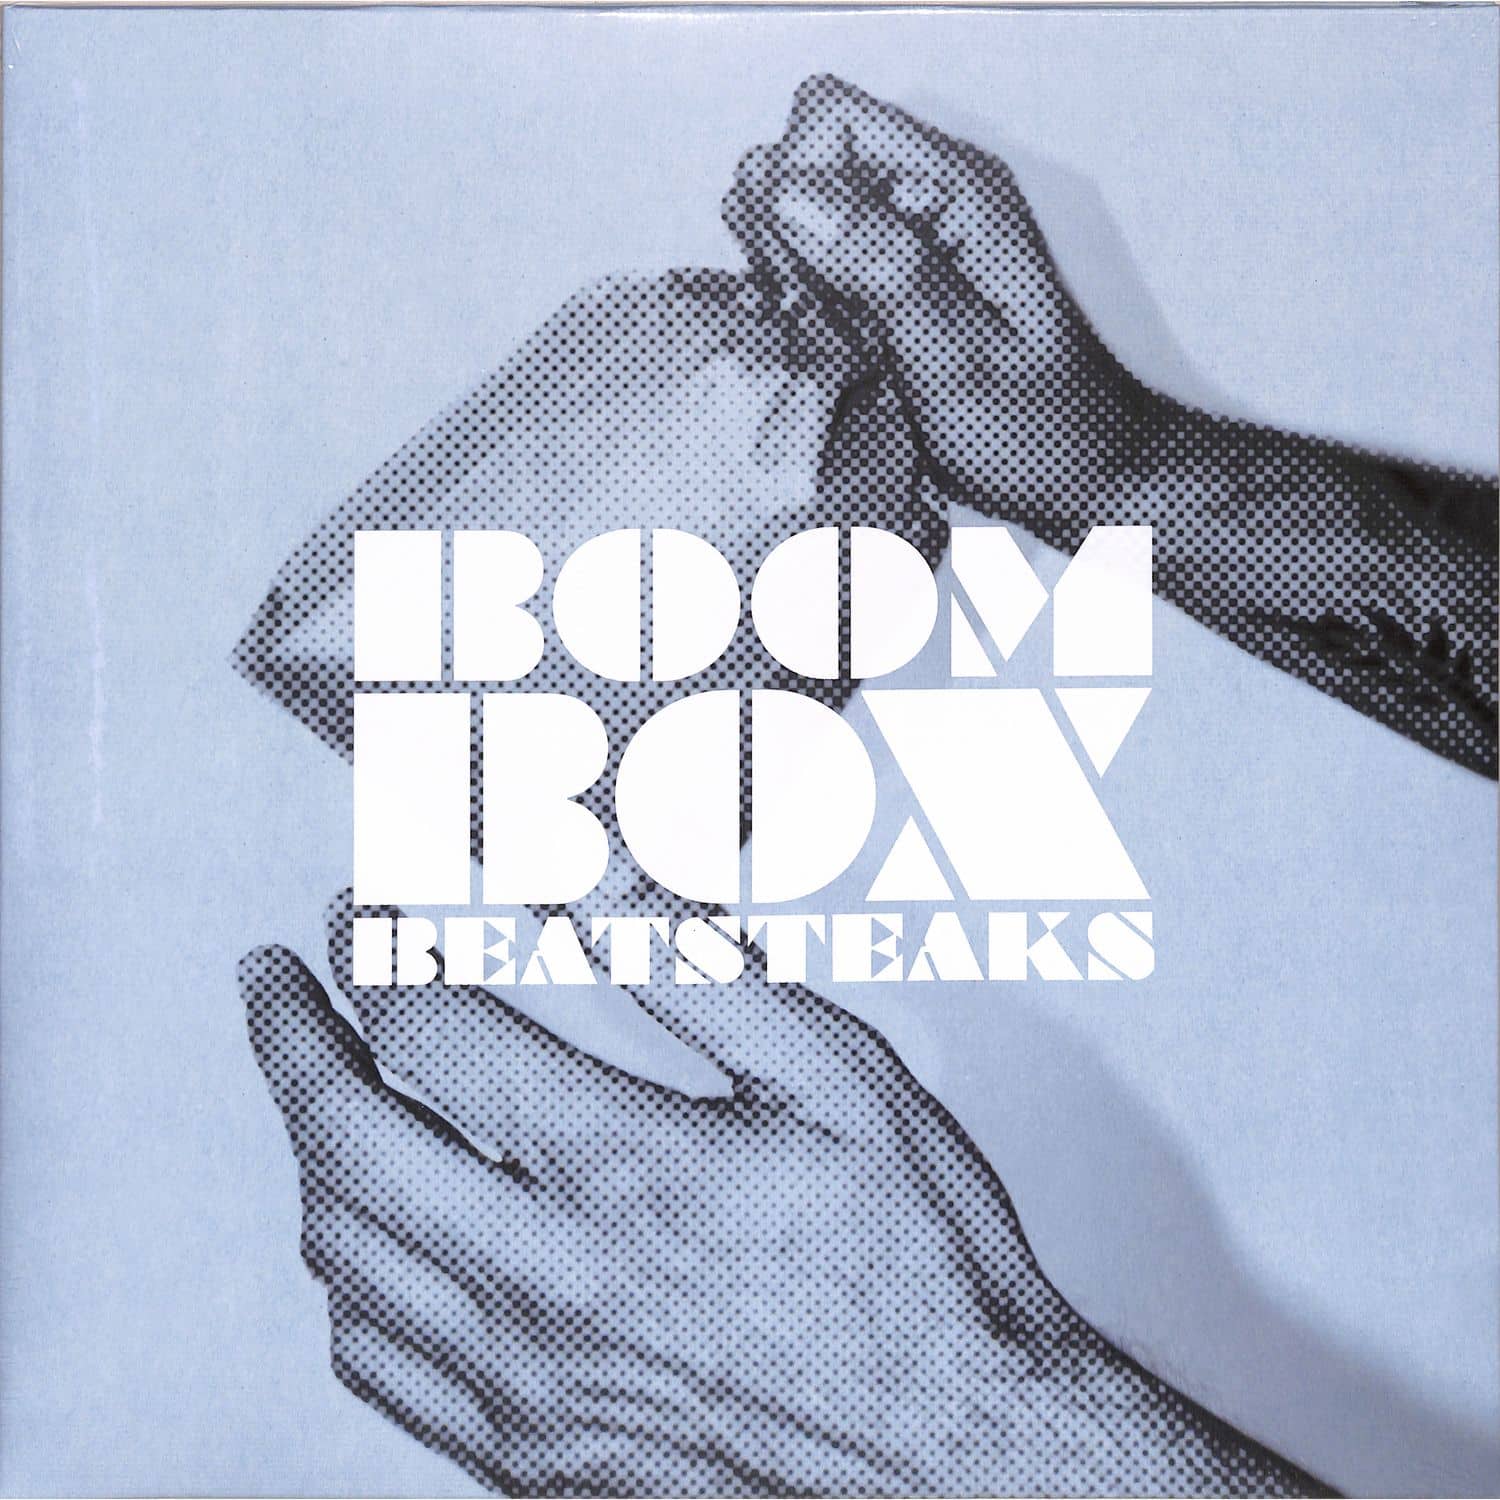 Beatsteaks - BOOMBOX 